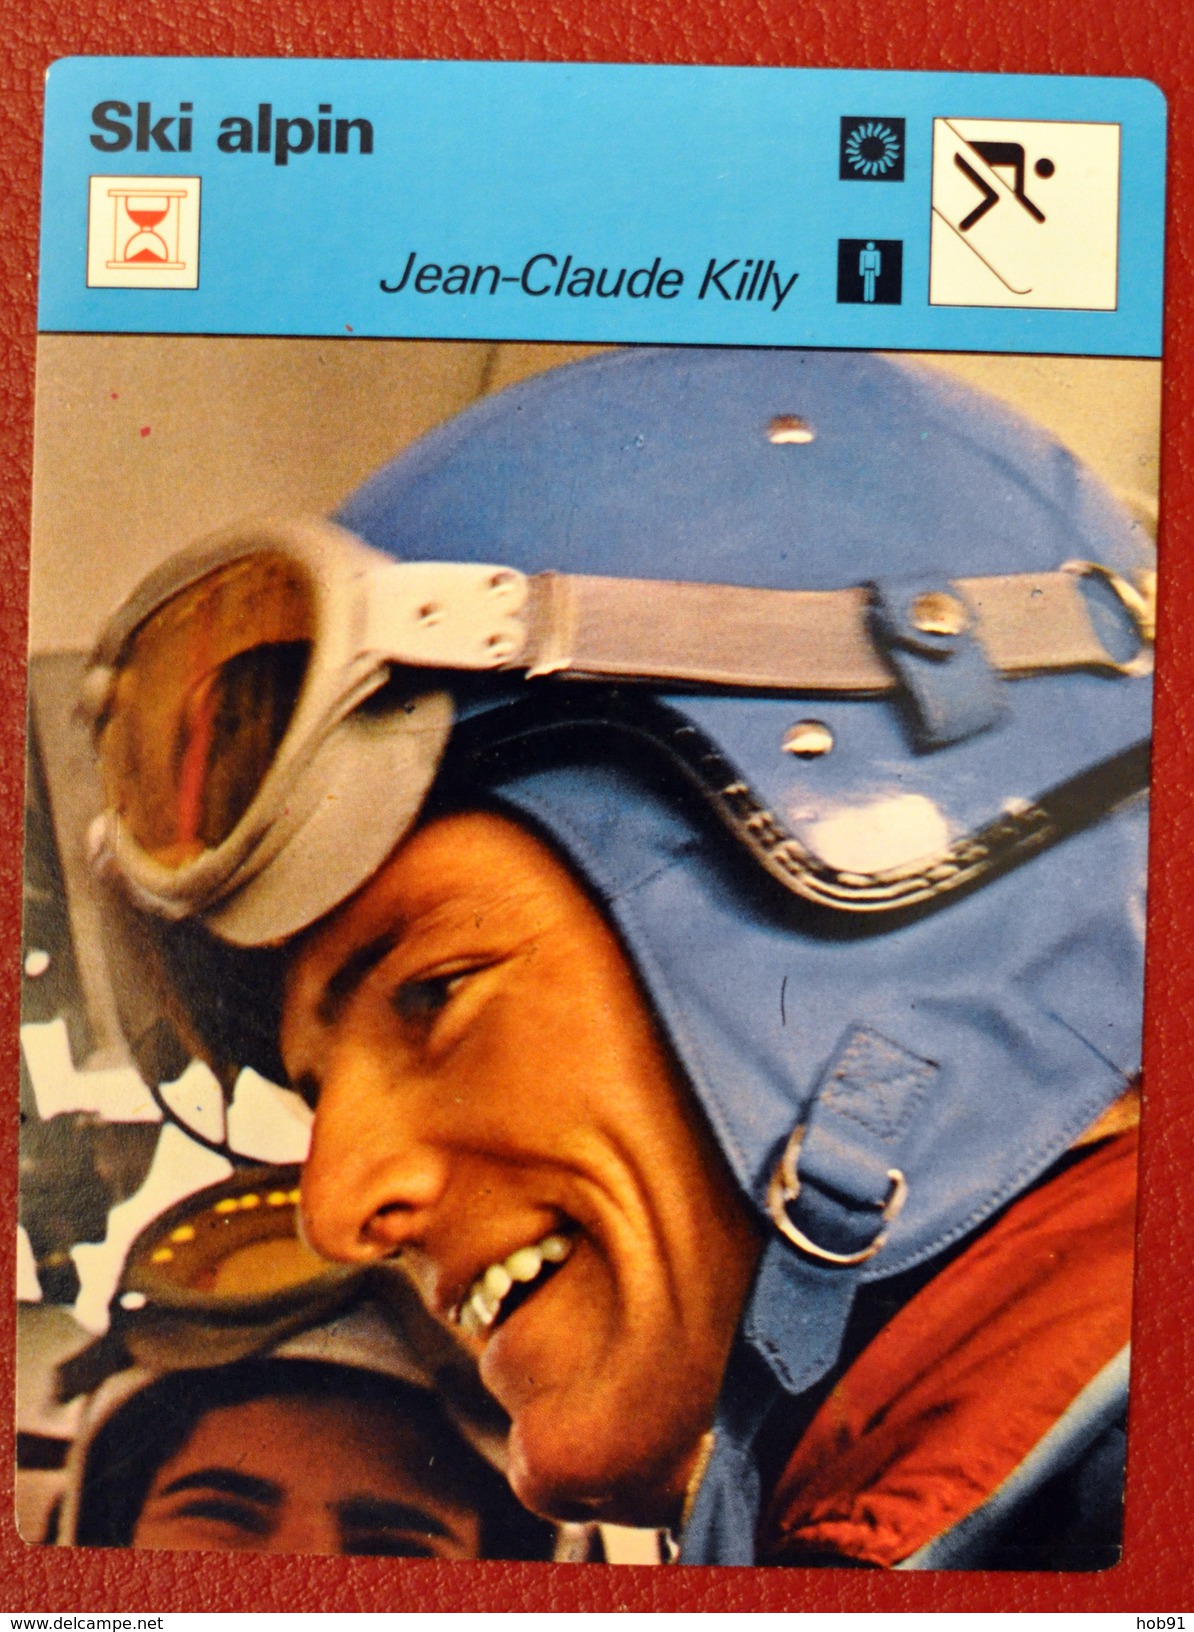 FICHE EDITION RENCONTRE 1976 SKI ALPIN JEAN CLAUDE KILLY (CL 530) - Sport